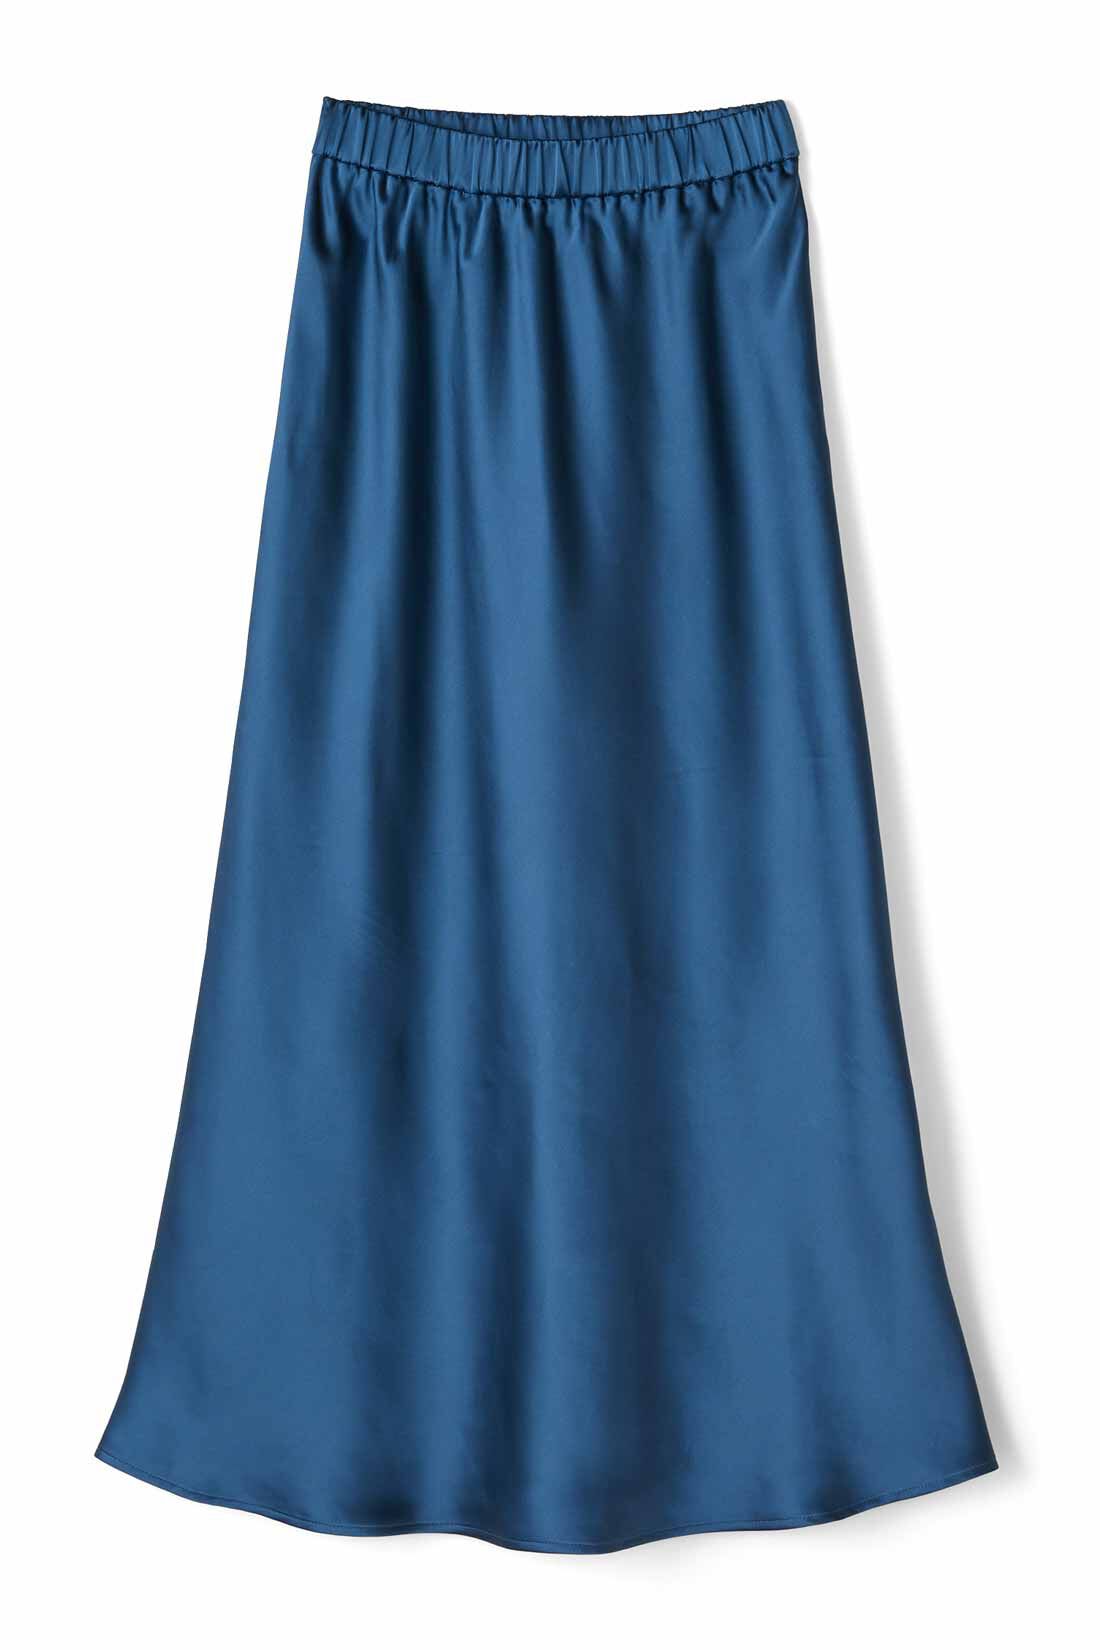 IEDIT|IEDIT[イディット]　サテンの光沢が美しいセミサーキュラースカート〈ベージュ〉|〈ディープブルー〉